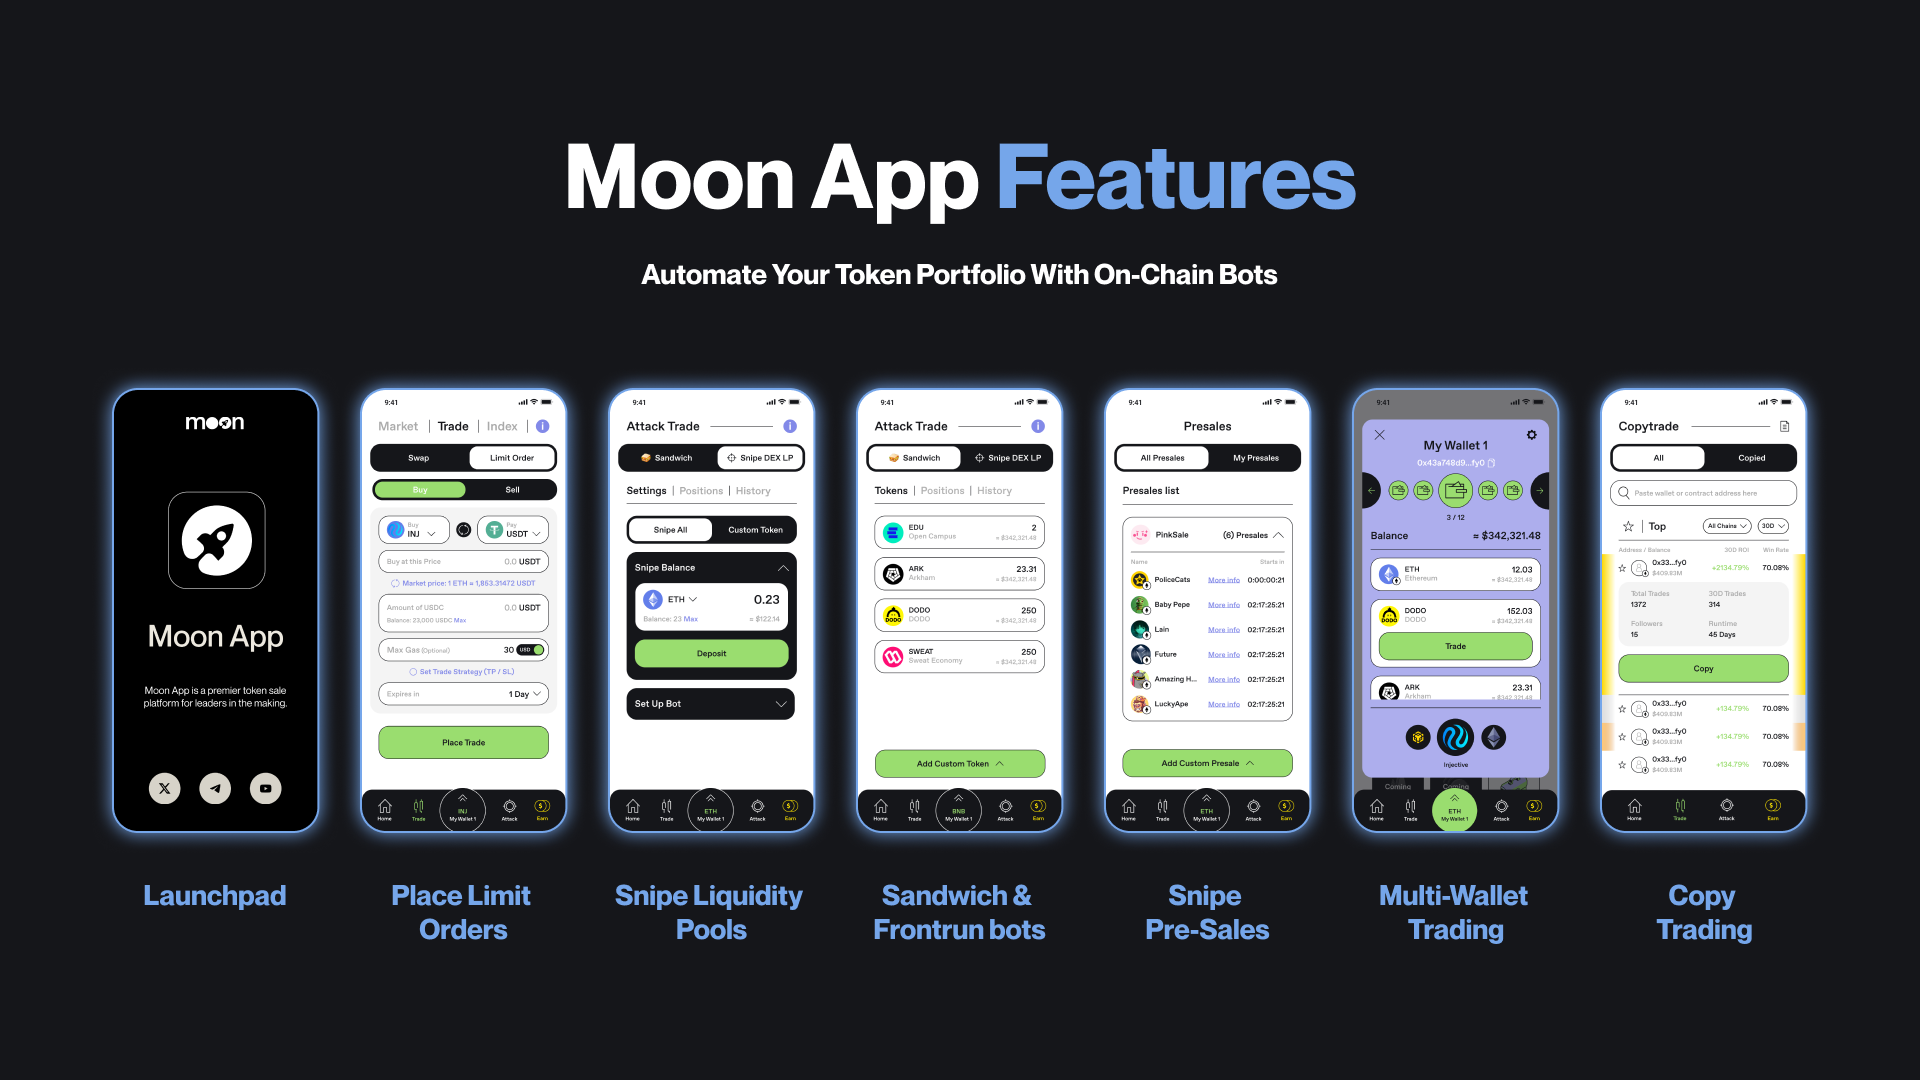 Moon App Features